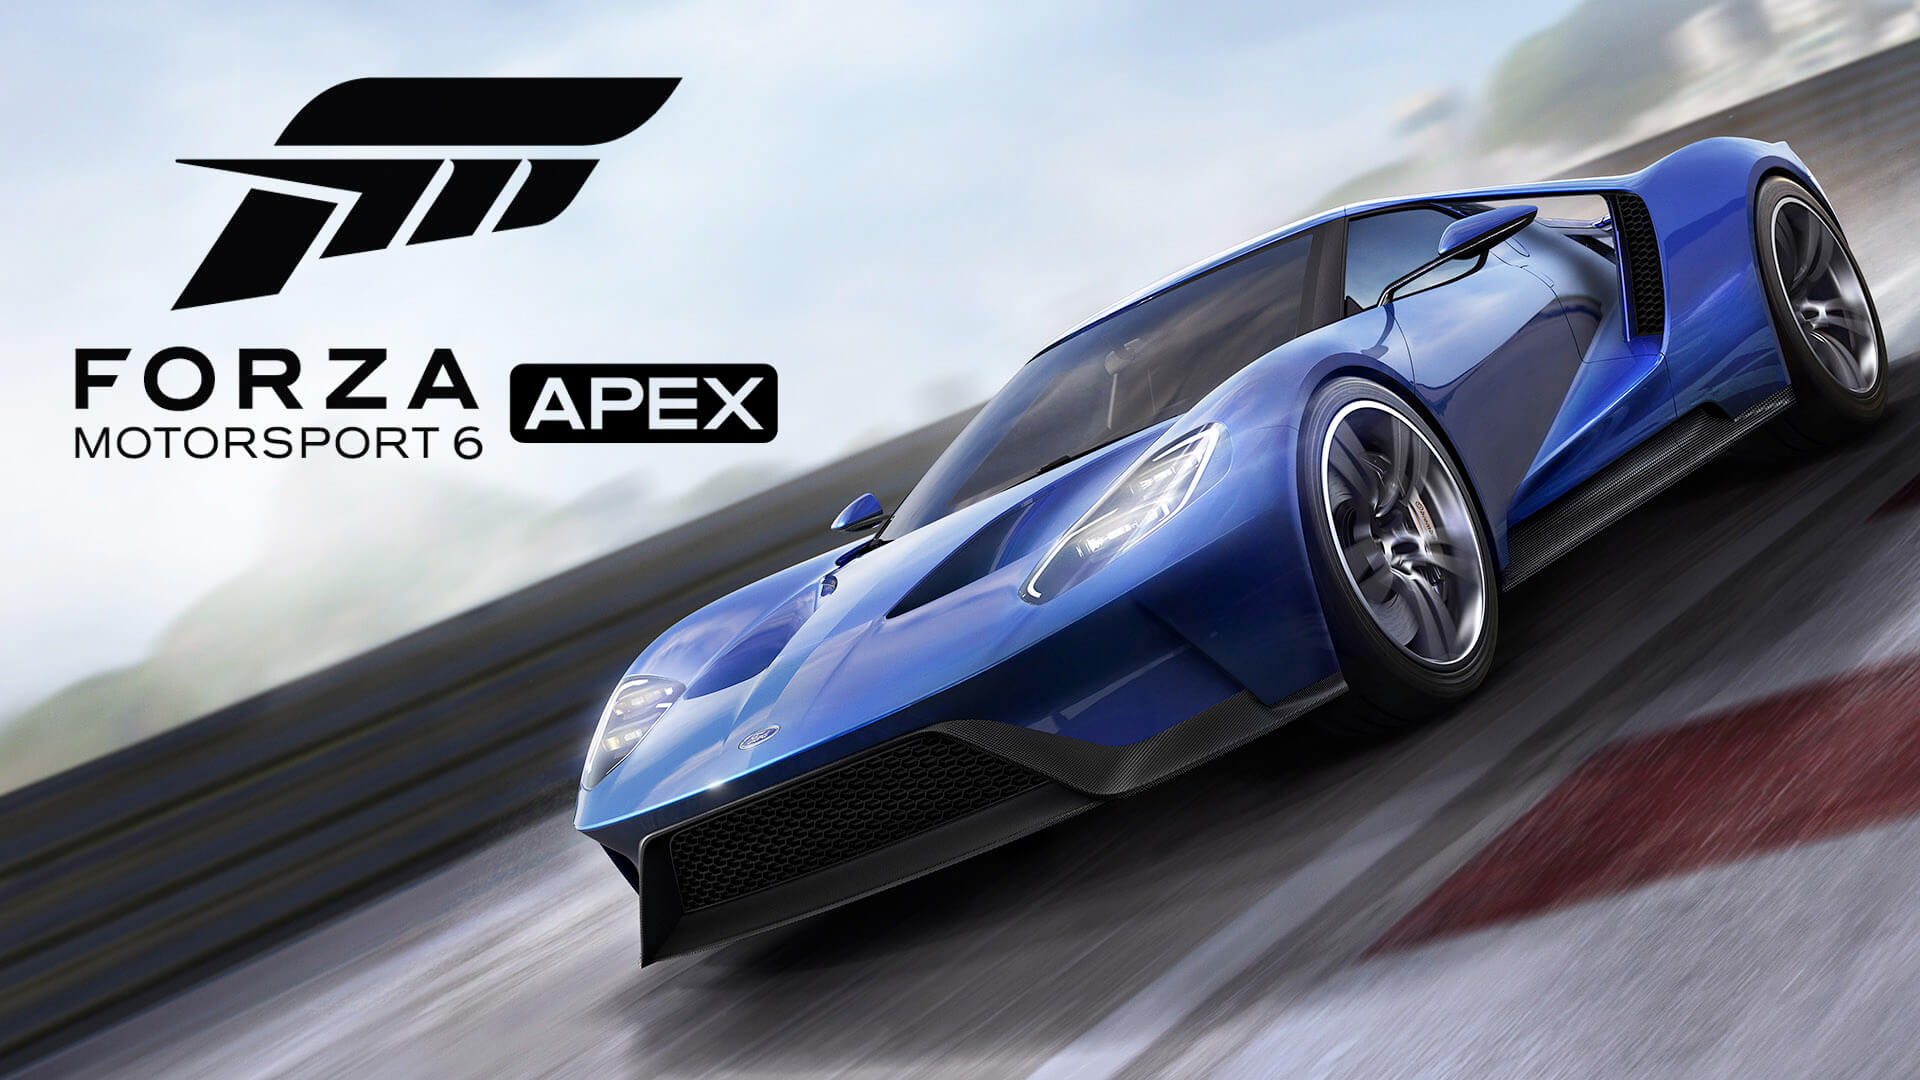 Forza-Motorsport-6-APEX-gamersrd.com